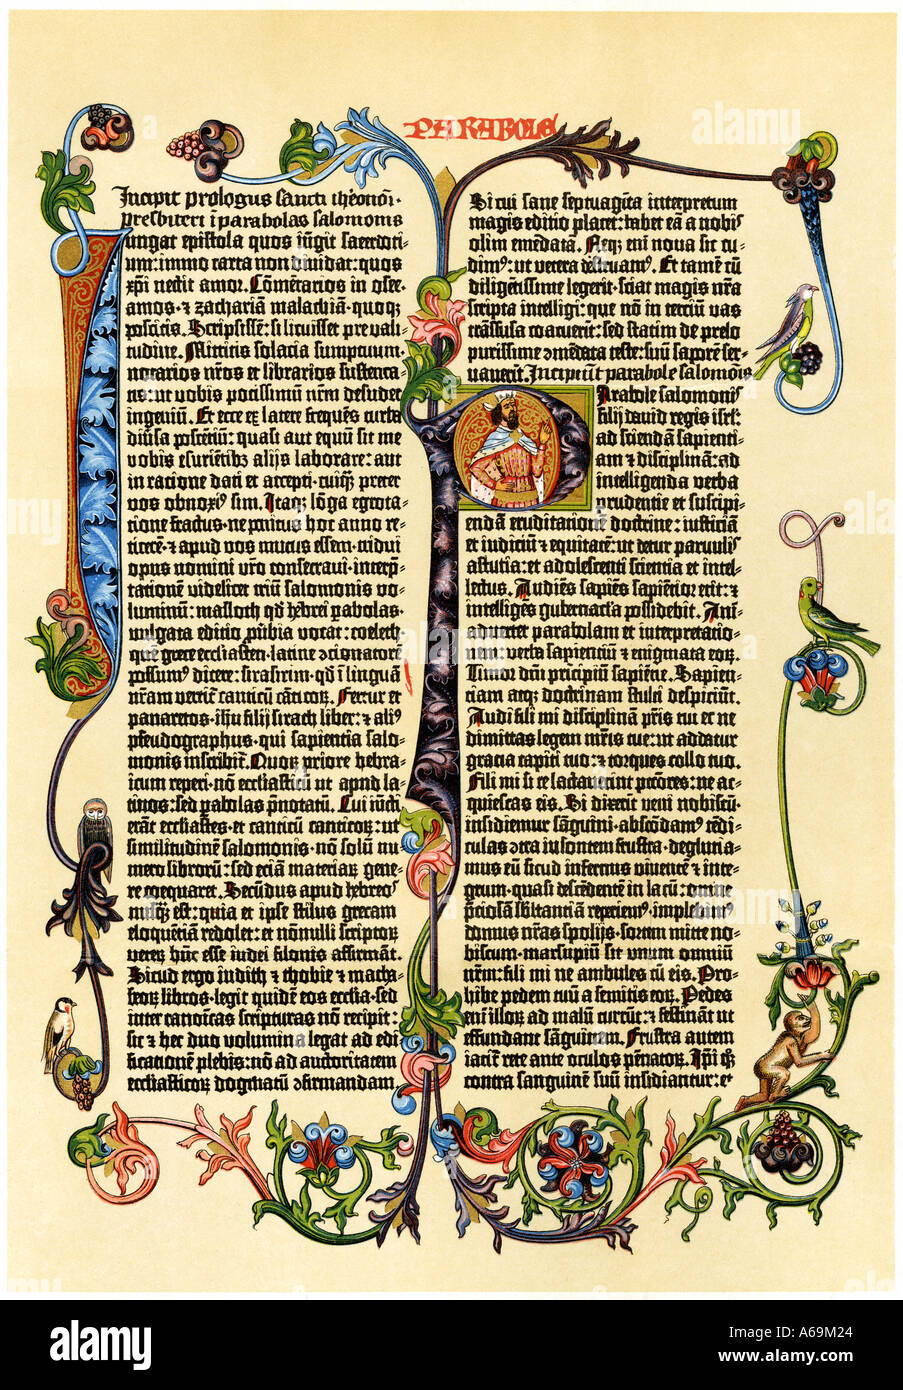 Seite von Gutenberg s42 die Bibel in der 1450 gedruckten s ist wahrscheinlich der erste Einsatz der bewegliche Art. Farblithographie Stockfoto